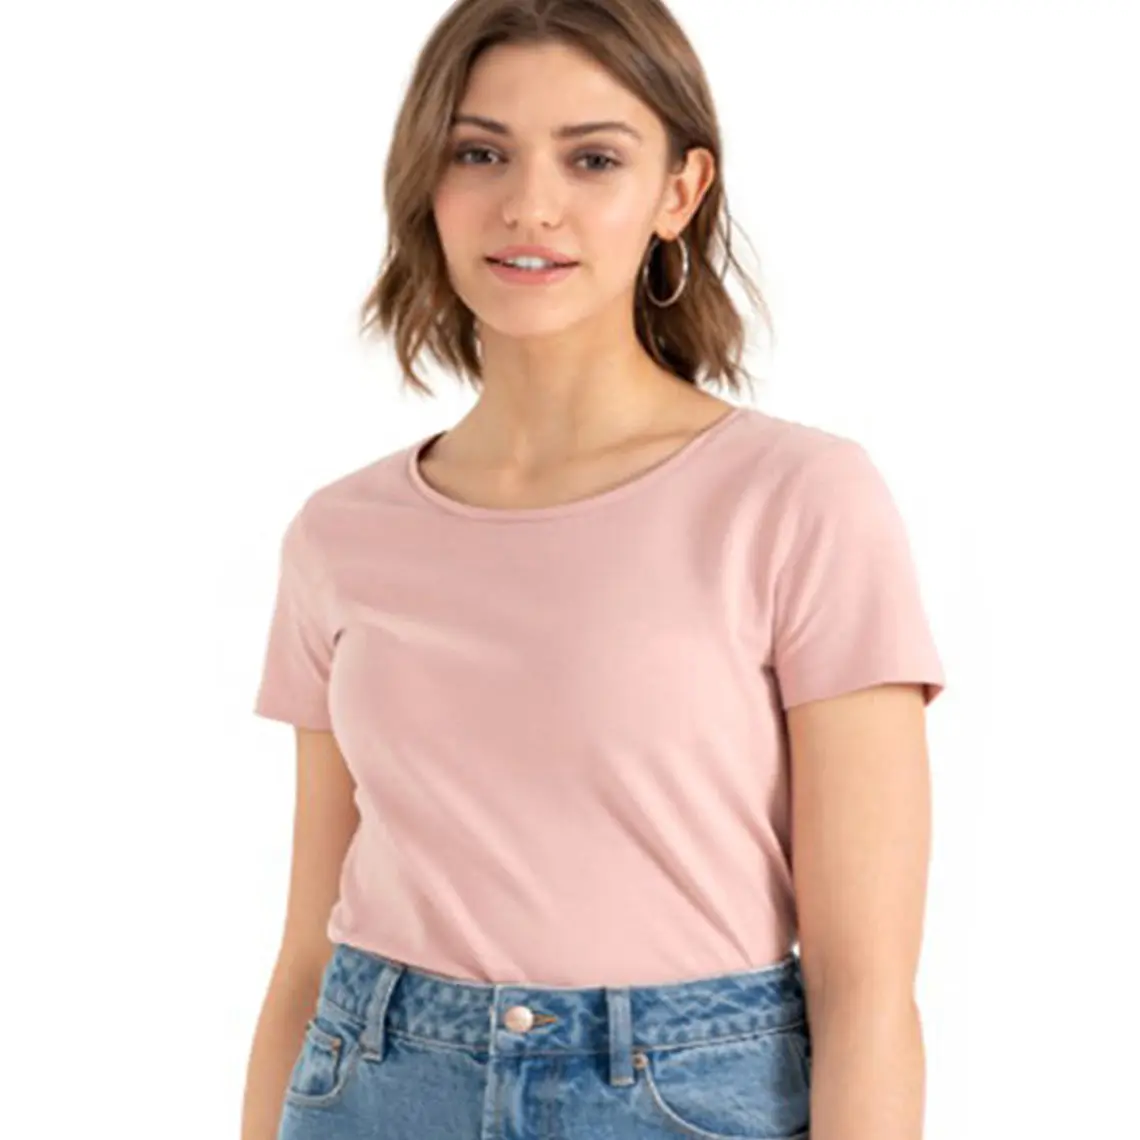 Buoni prezzi t-shirt da donna "EVA Single jersey" 95% cotone 5% elastan prezzo all'ingrosso